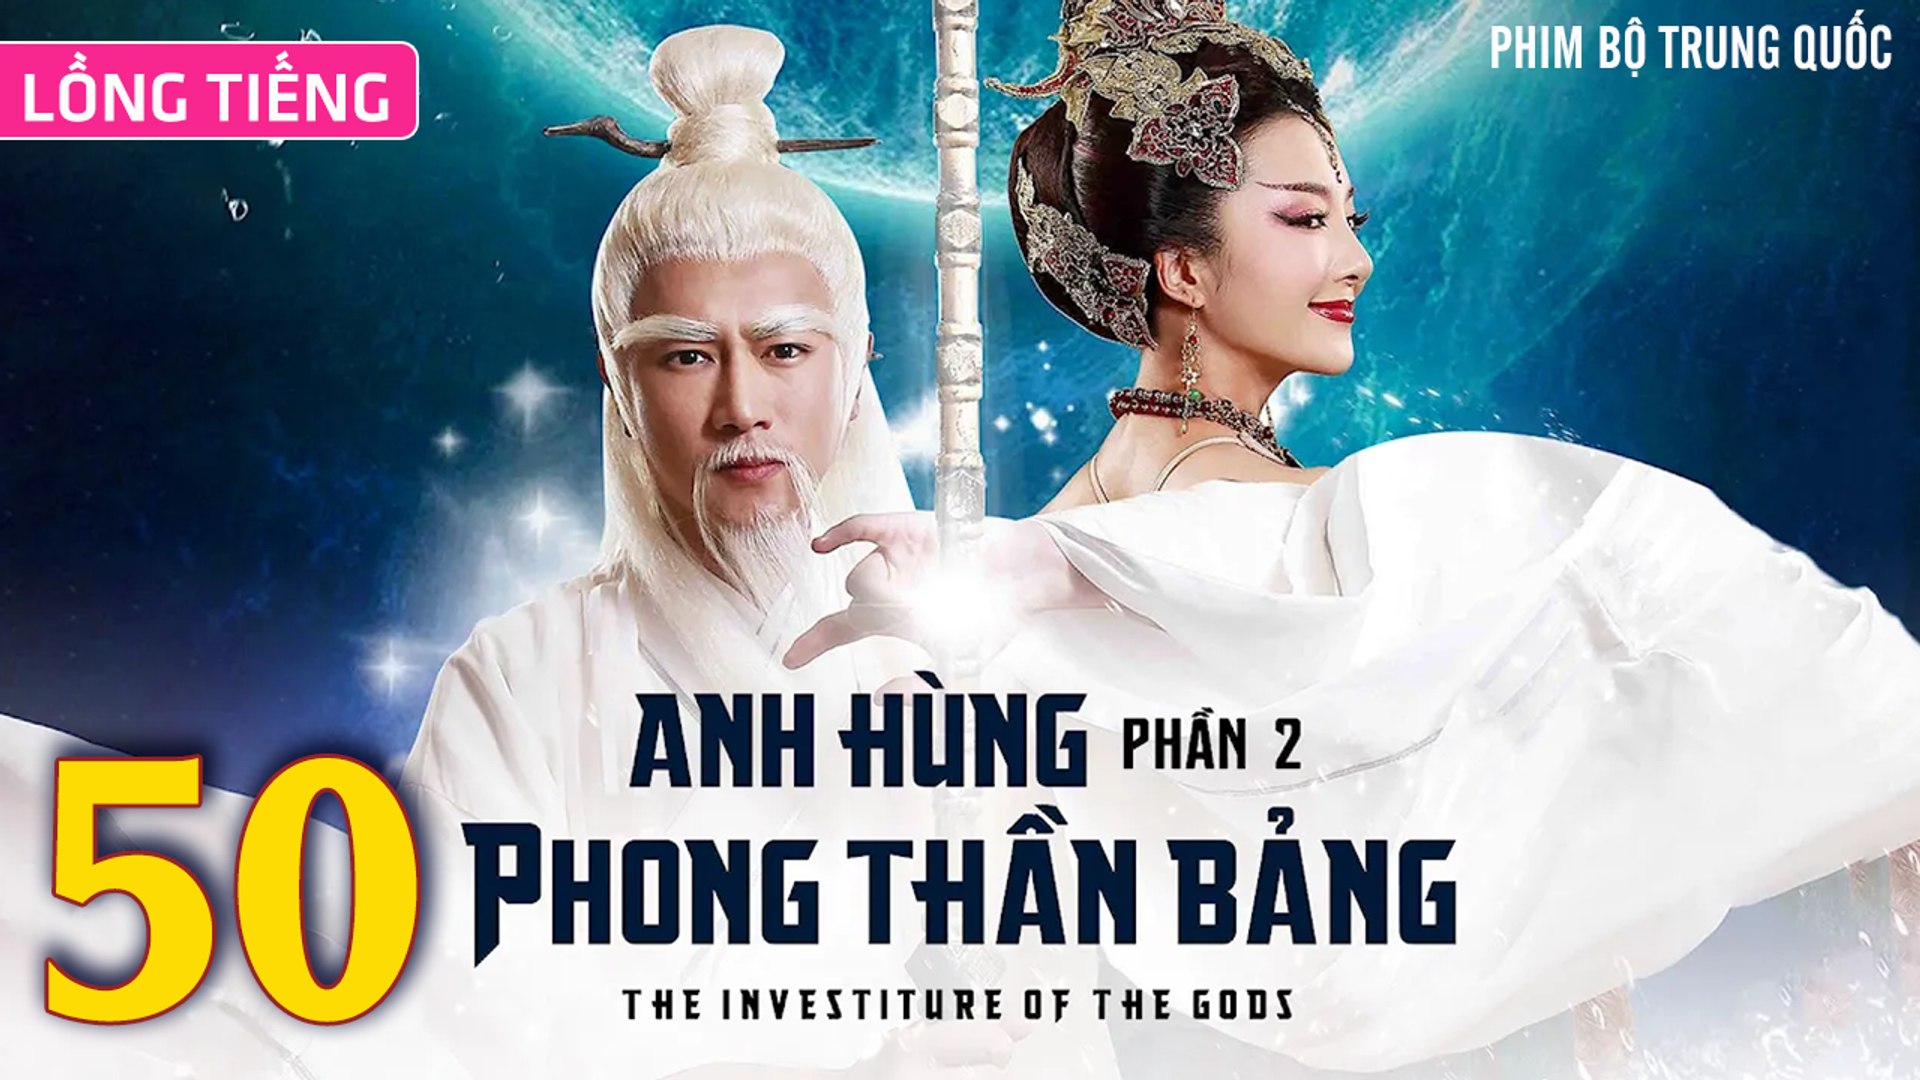 ⁣Phim Bộ Hay: ANH HÙNG PHONG THẦN BẢNG 2 - Tập 50 (Lồng Tiếng) | Phim Bộ Trung Quốc Hay Nhất 2023